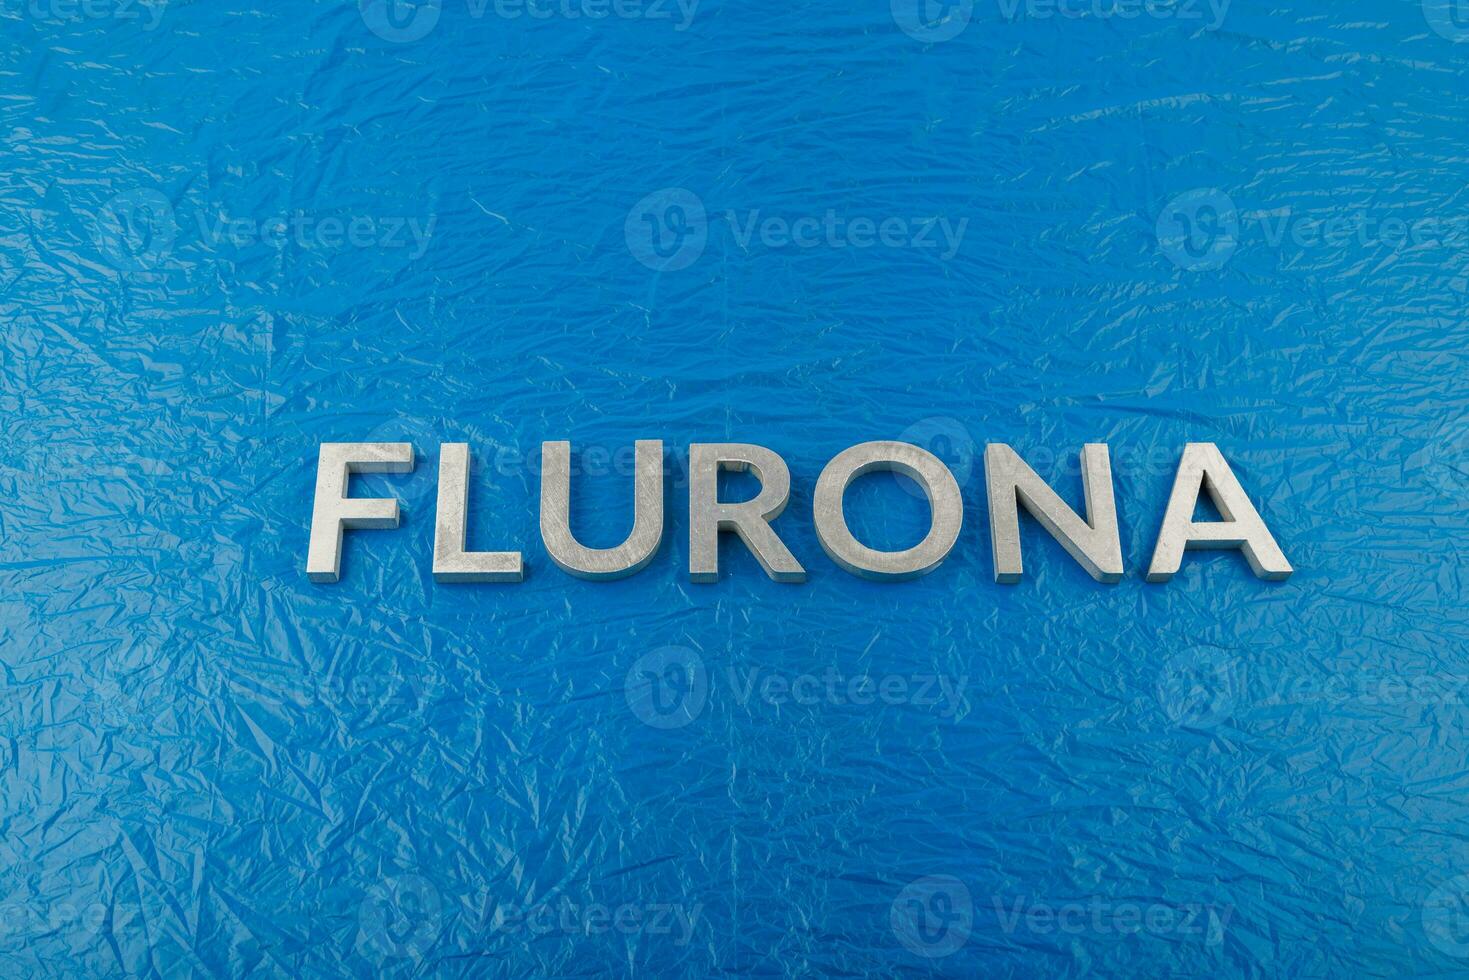 das wort flurona mit silbernen metallbuchstaben auf zerknittertem blauem kunststofffolienhintergrund foto